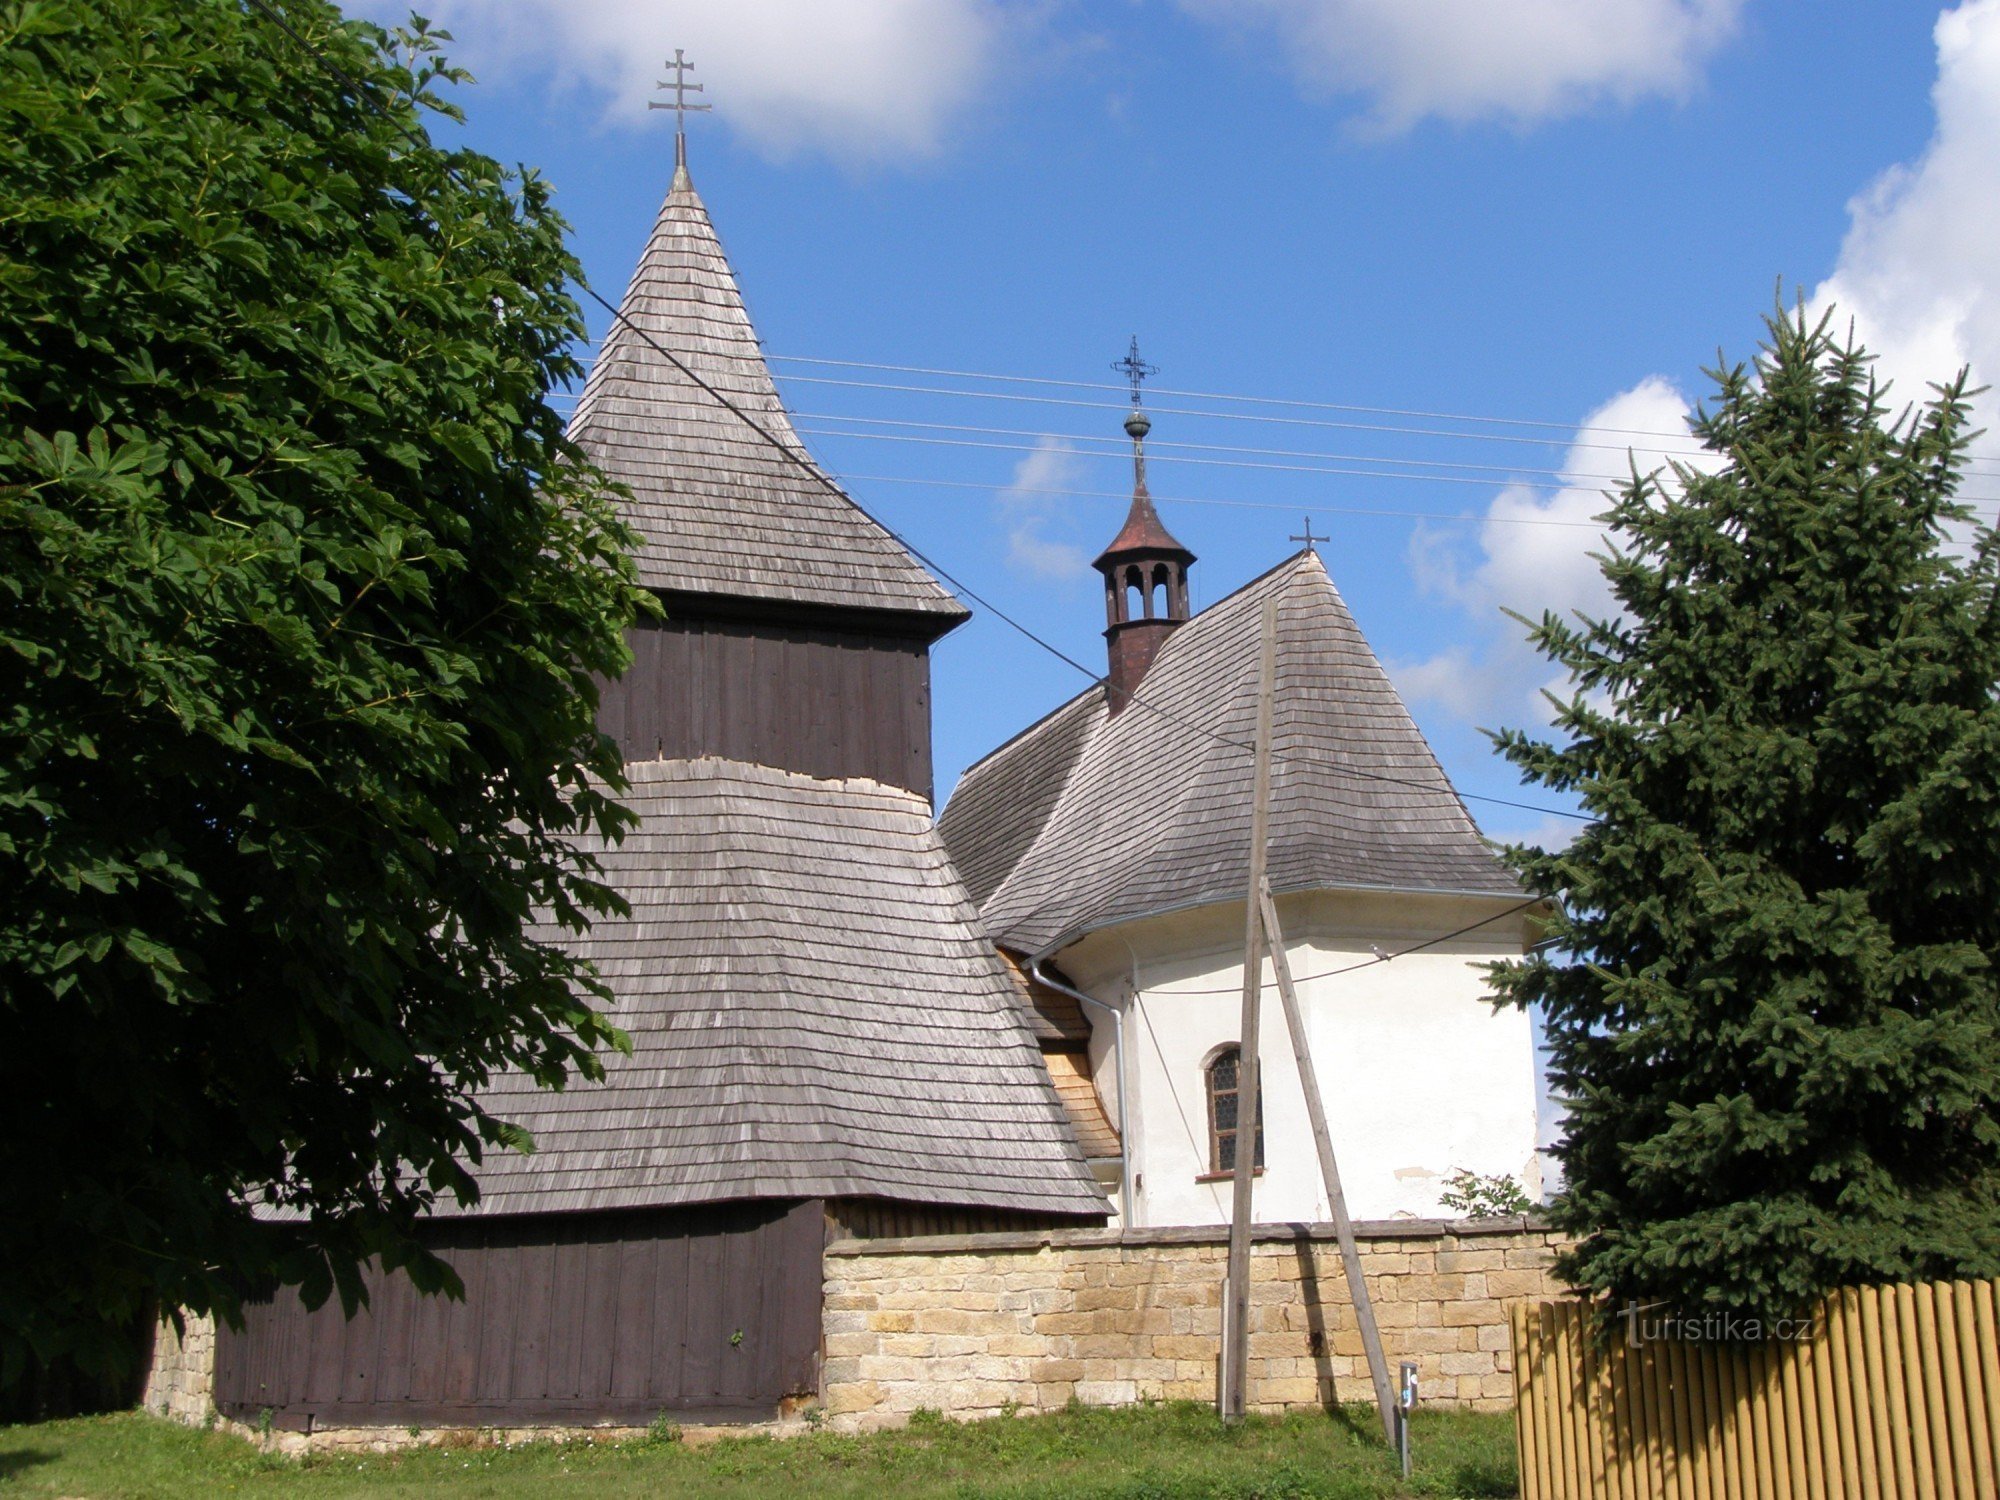 Vysočany - dřevěný kostel sv. Markéty se zvonicí